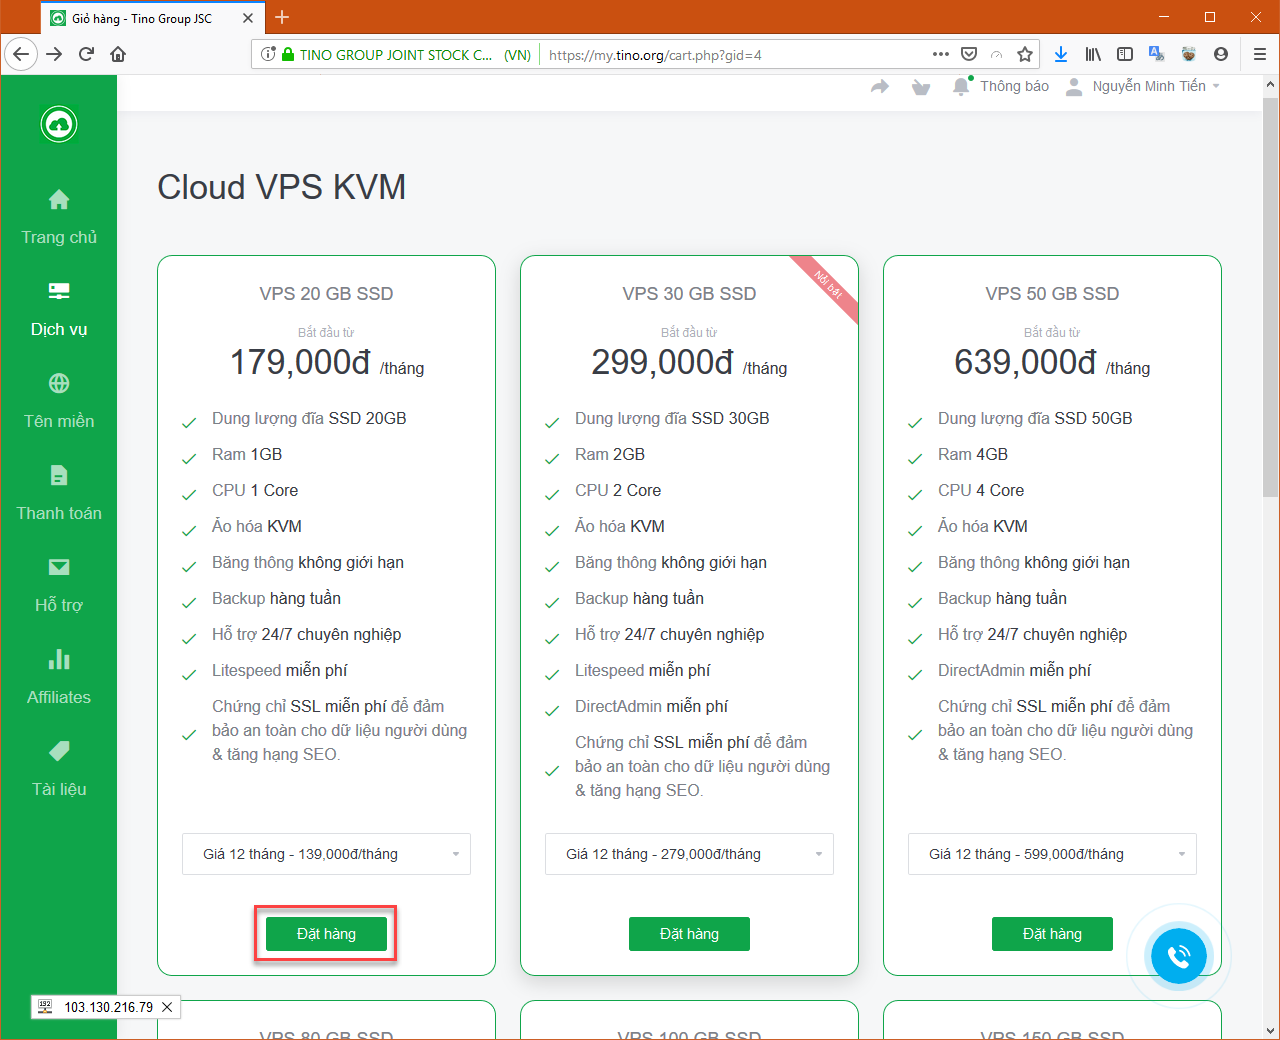 [Client] Hướng dẫn đăng ký dịch vụ Cloud VPS 5